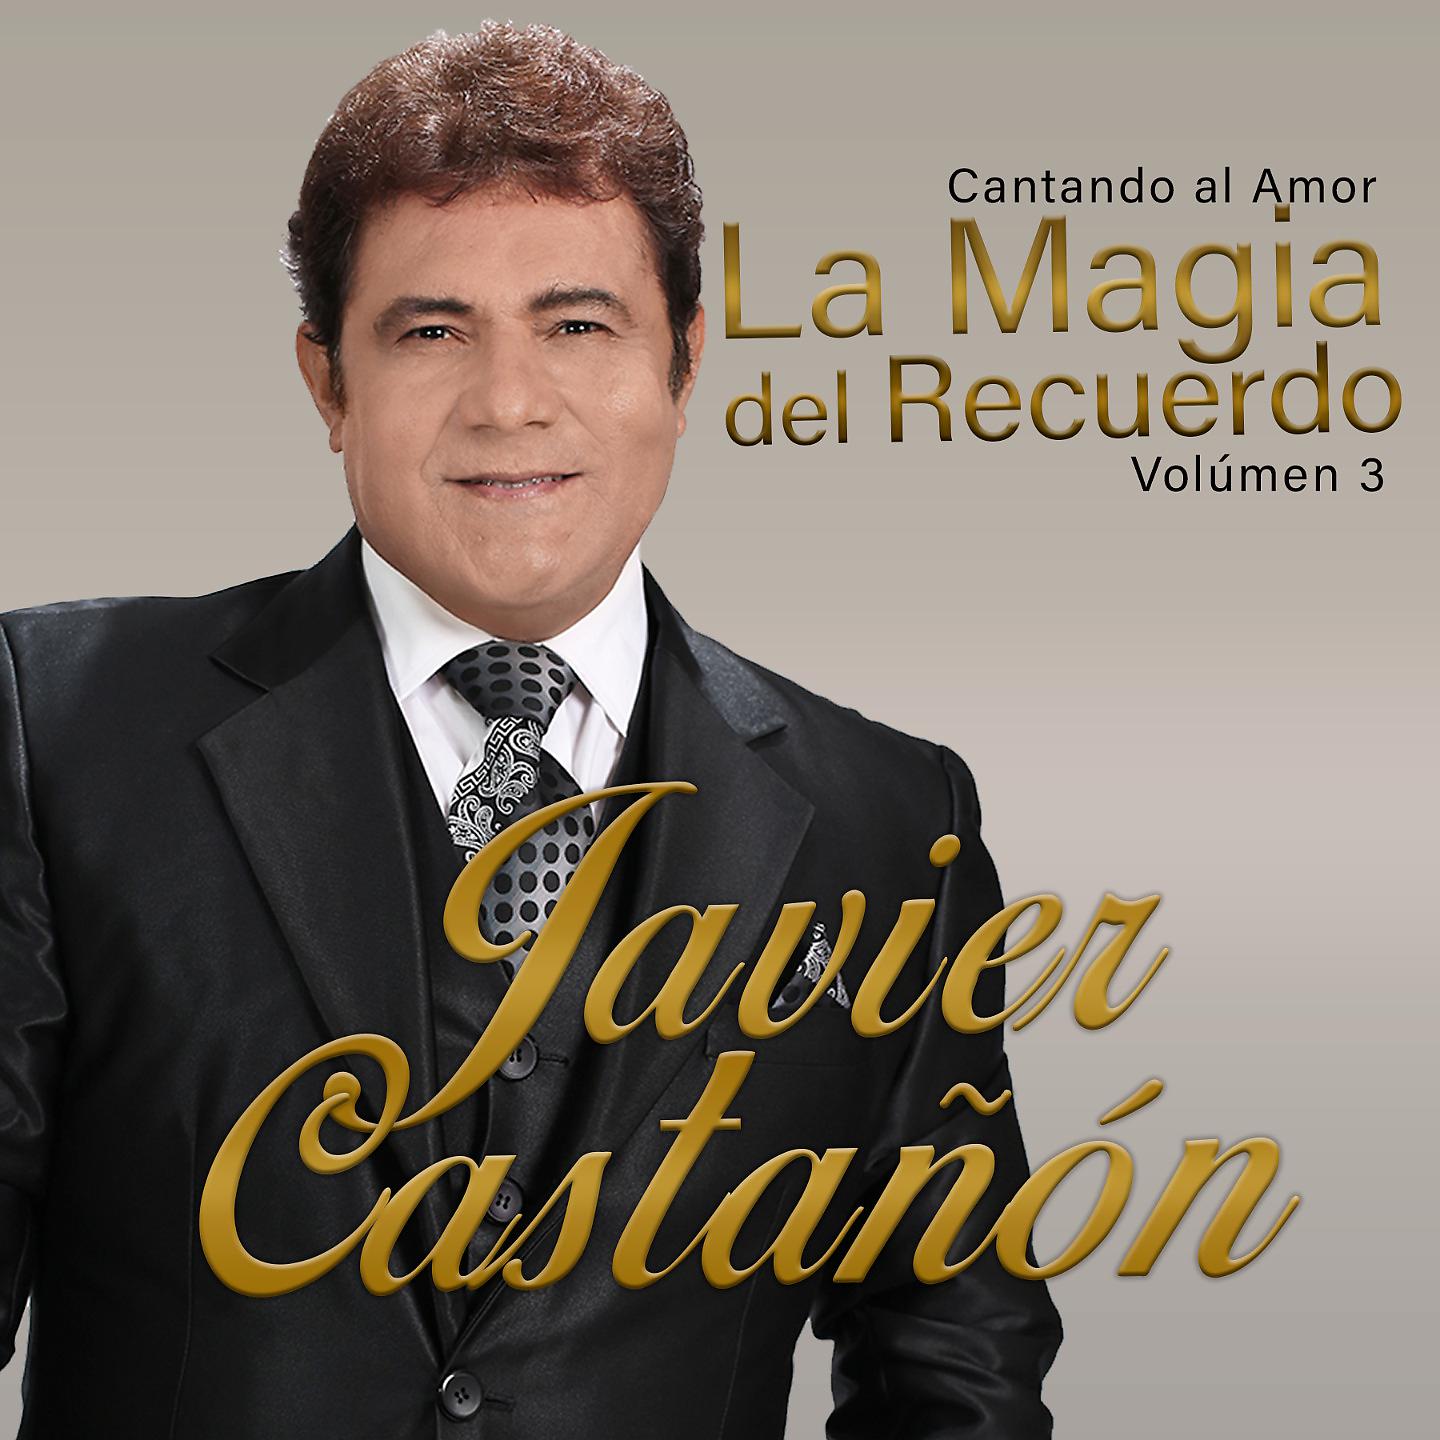 Постер альбома "Cantando al amor, la magia del recuerdo" volúmen 3